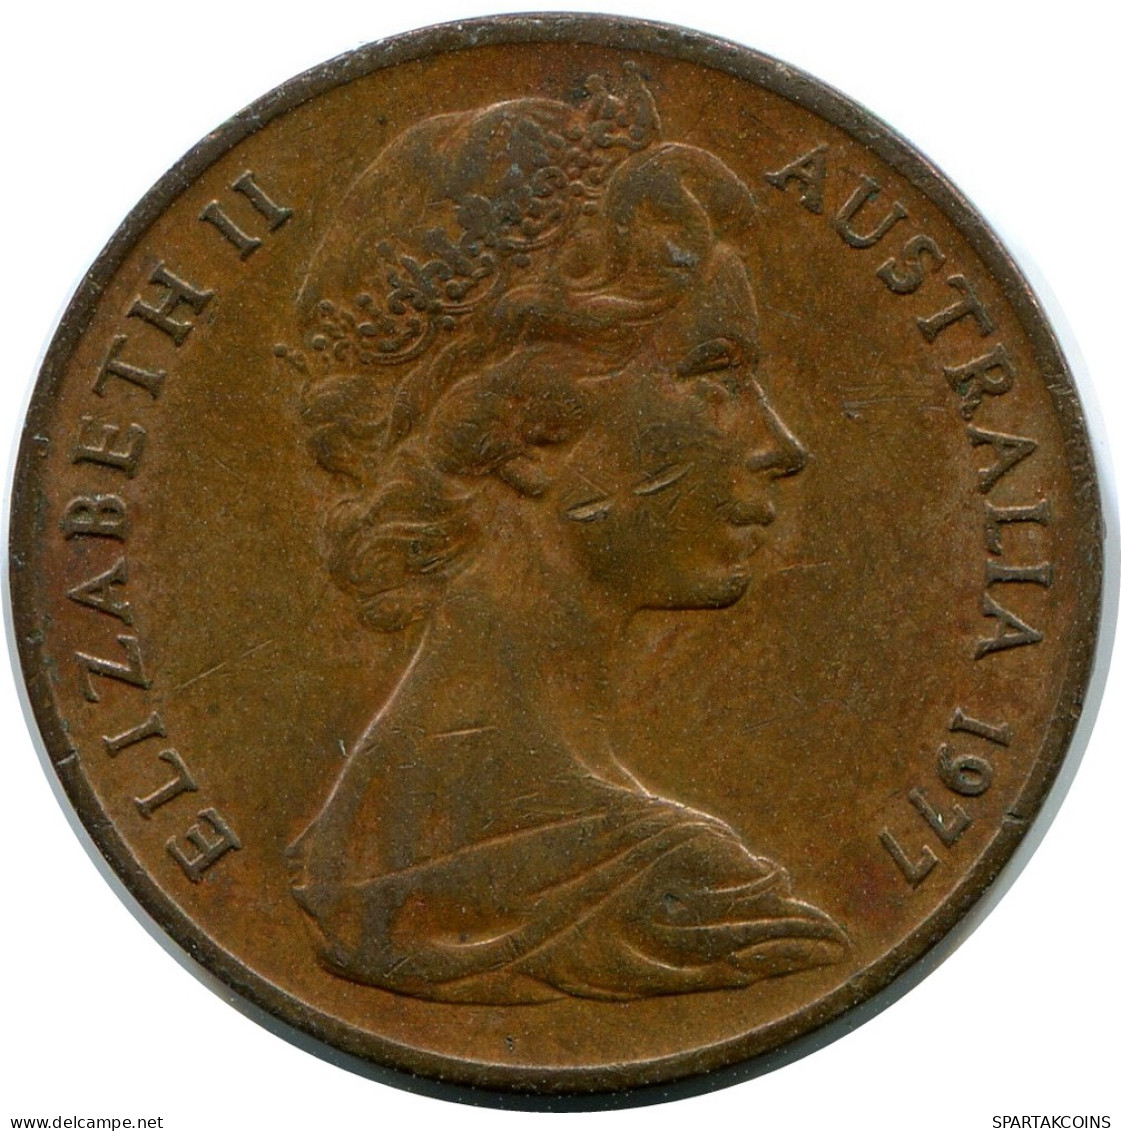 2 CENTS 1971 AUSTRALIA Coin #AR908.U - 2 Cents